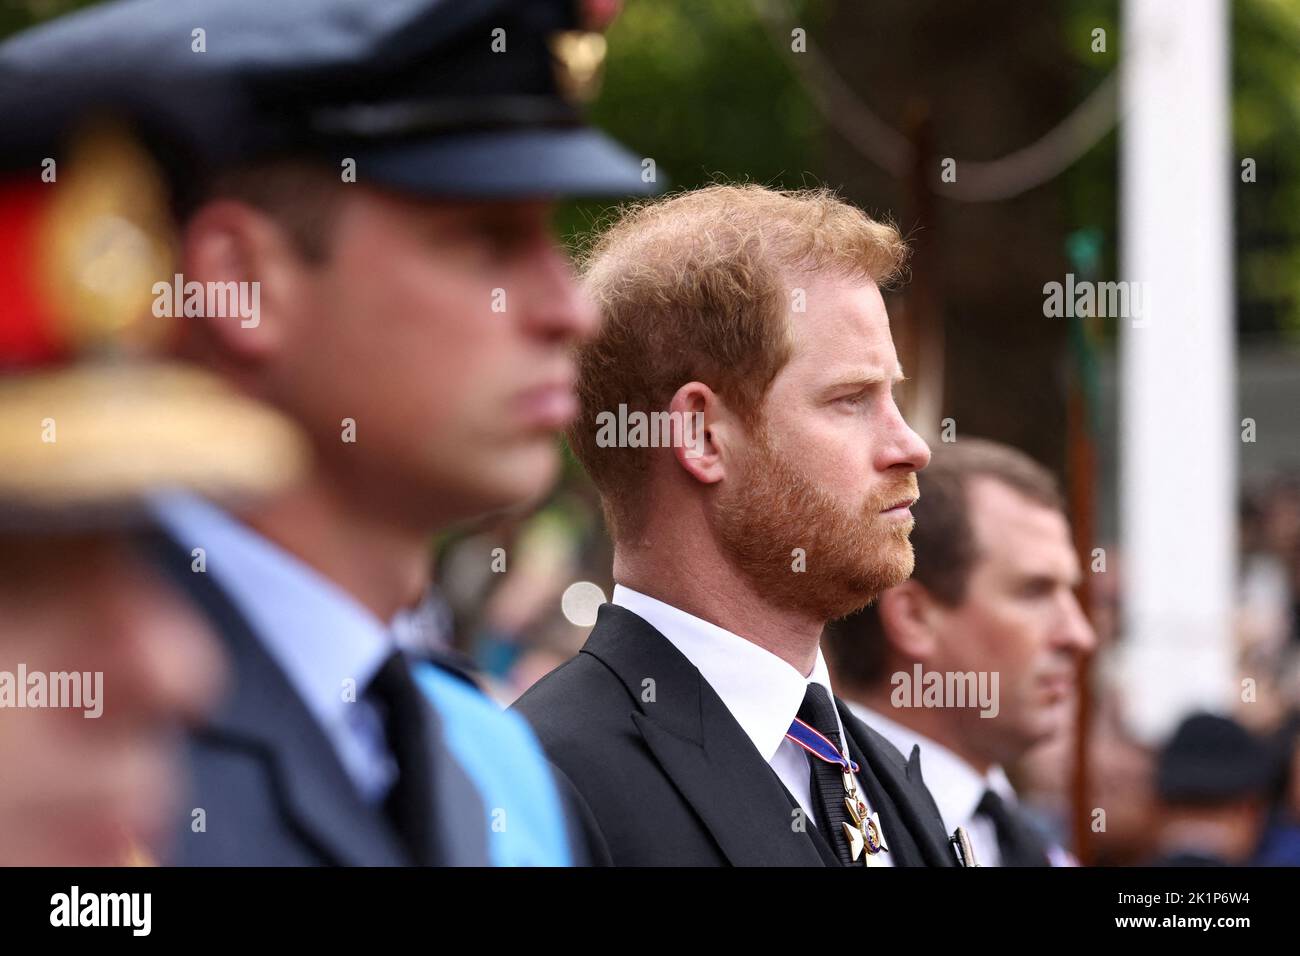 William britannico, Principe di Galles e il Principe britannico Harry, Duca di Sussex partecipano ai funerali e alla sepoltura della regina Elisabetta britannica, a Londra, in Gran Bretagna, il 19 settembre 2022. REUTERS/Tom Nicholson Foto Stock